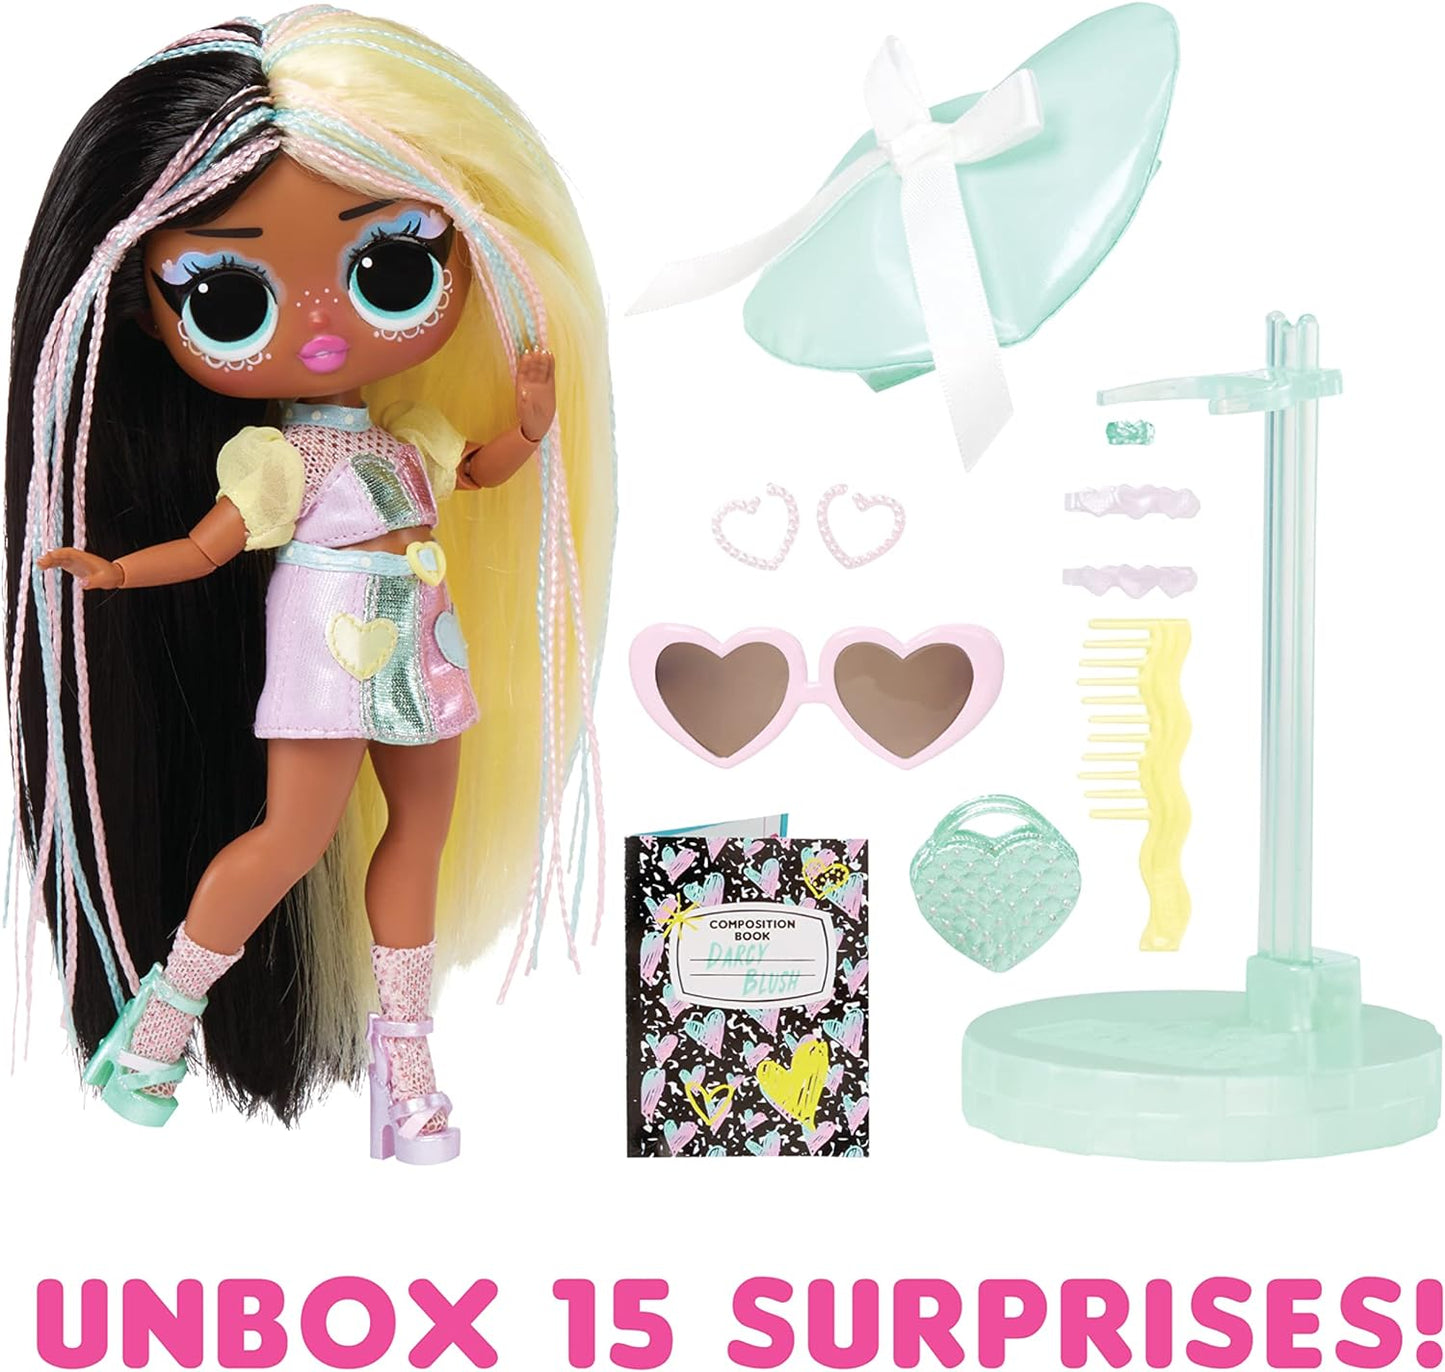 LOL Surprise Boneca fashion Tweens Série 4 - DARCY BLUSH - Unbox 15 surpresas e acessórios fabulosos - Ótimo presente para crianças de 4 anos ou mais